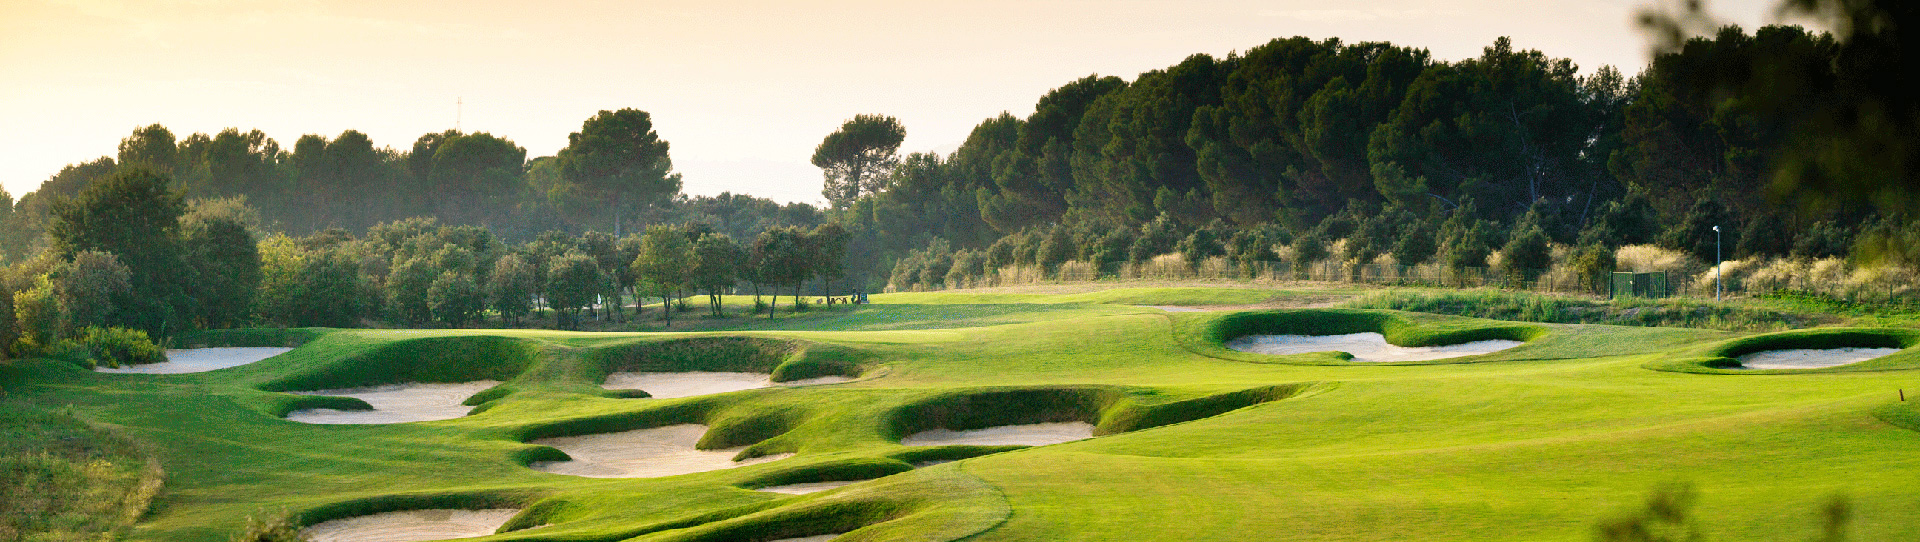 Spain golf courses - Real Club de Golf El Prat - Photo 3